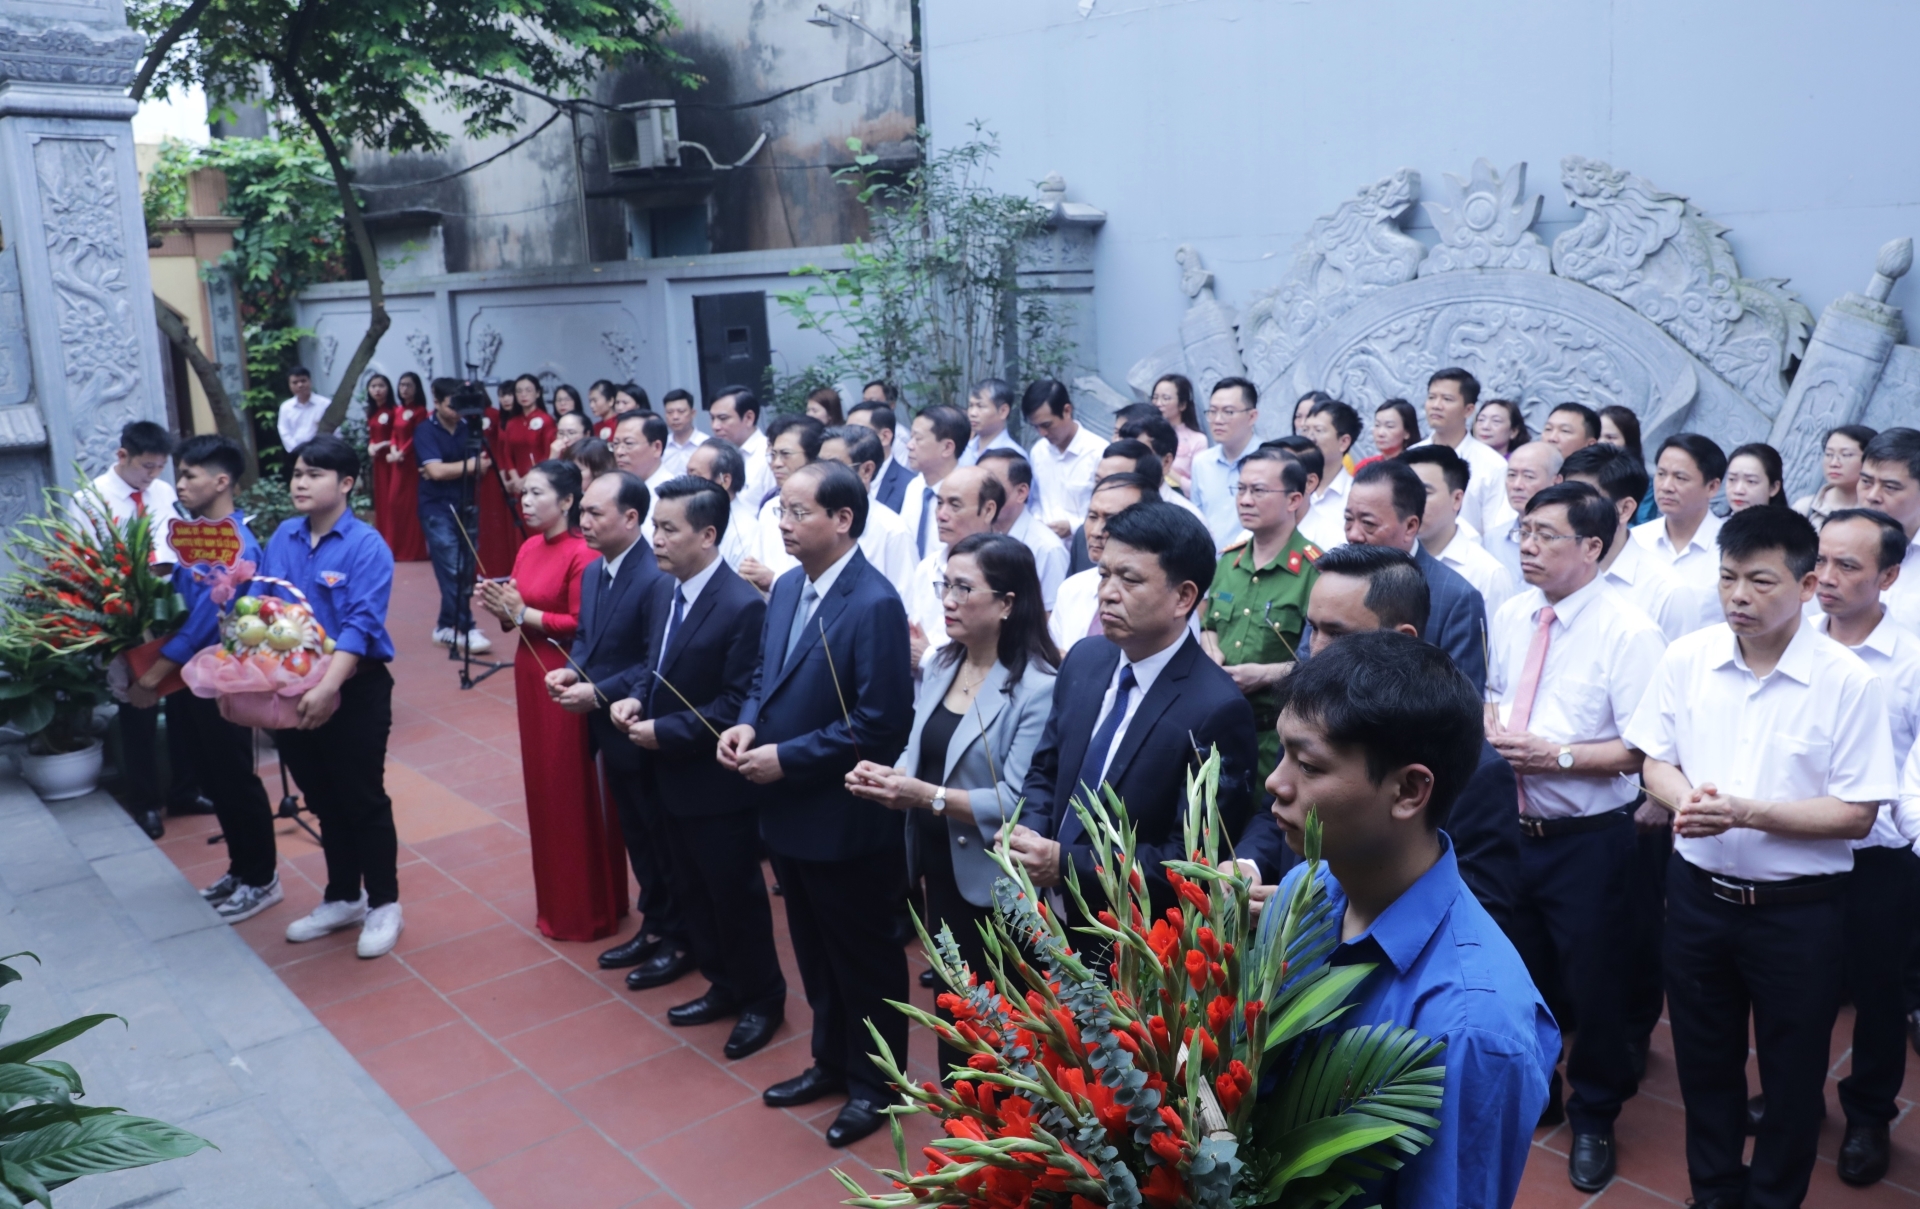 Đoàn dâng hương tưởng niệm, tham quan và nghe giới thiệu về thân thế sự nghiệp của đồng chí Đào Duy Tùng tại Nhà lưu niệm quê nhà của Đồng chí ở xóm Chợ, xã Cổ Loa.